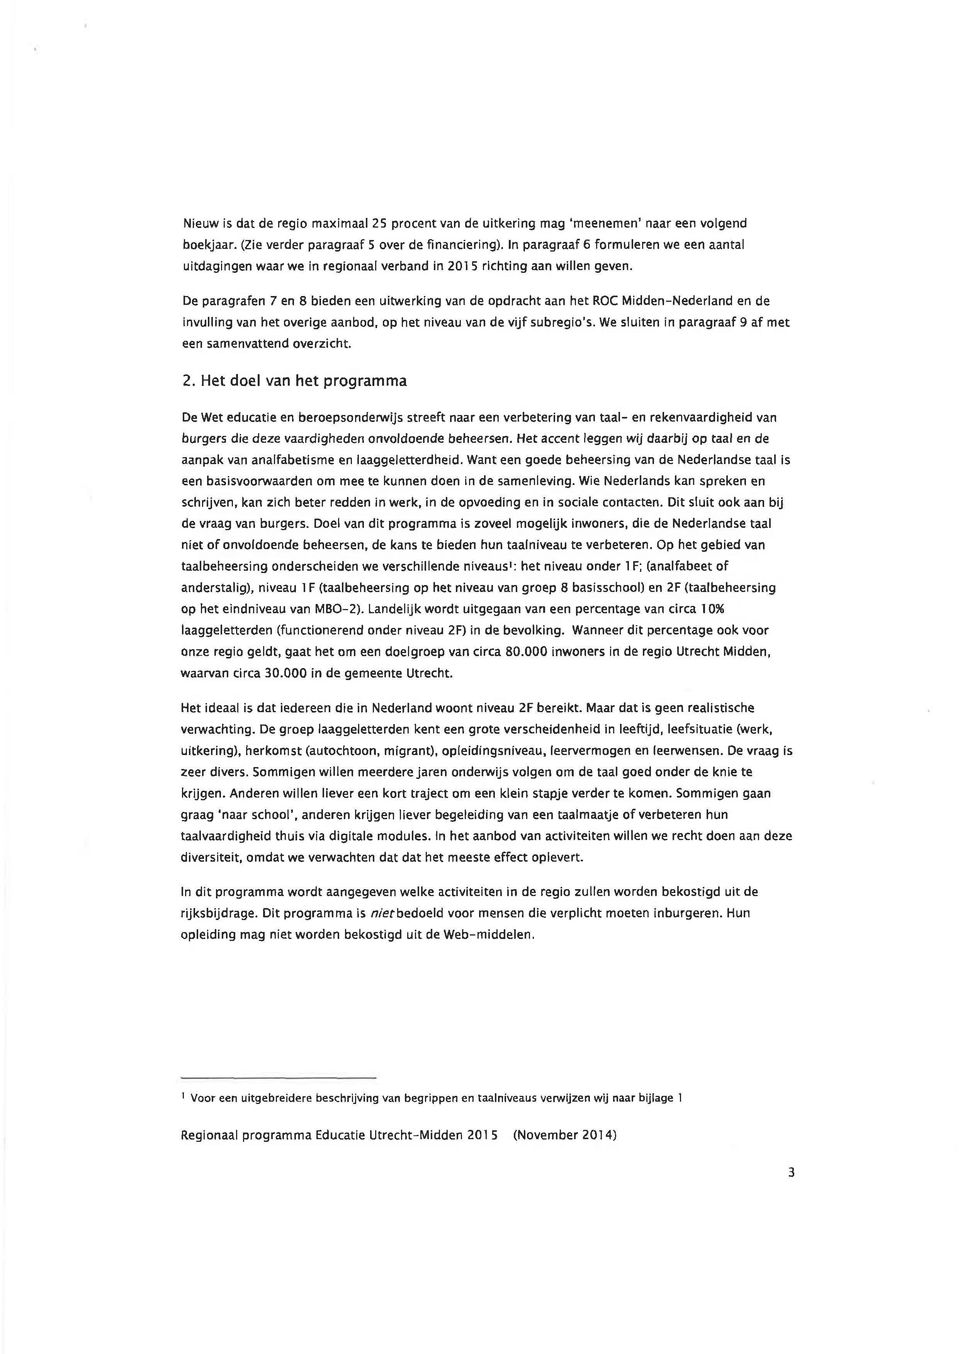 De paragrafen 7 en 8 bieden een uitwerking van de opdracht aan het ROC Midden-Nederland en de invulling van het overige aanbod, op het niveau van de vijf subregio's.